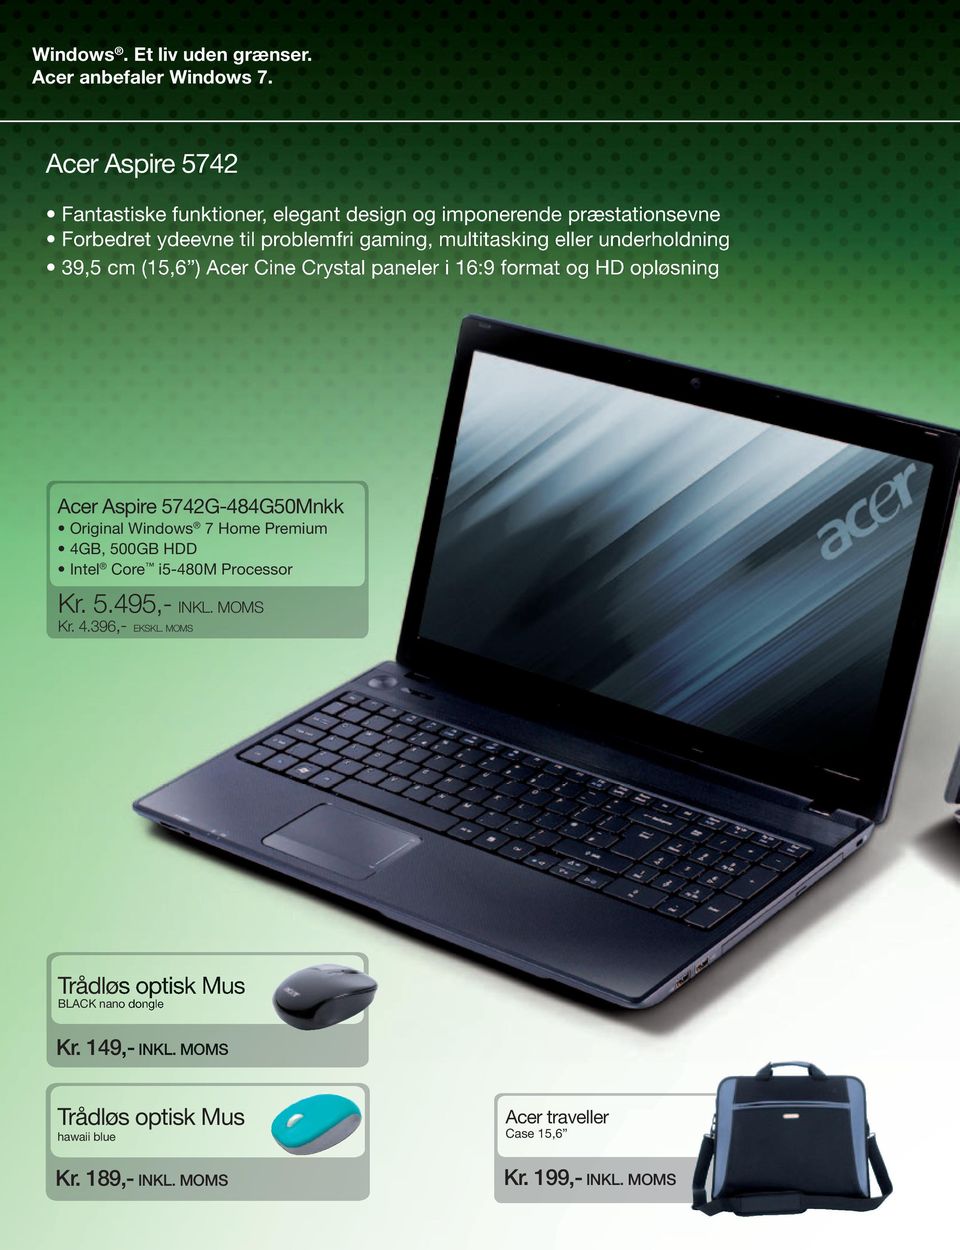 eller underholdning 39,5 cm (15,6 ) Acer Cine Crystal paneler i 16:9 format og HD opløsning Acer Aspire 5742G-484G50Mnkk Original Windows 7